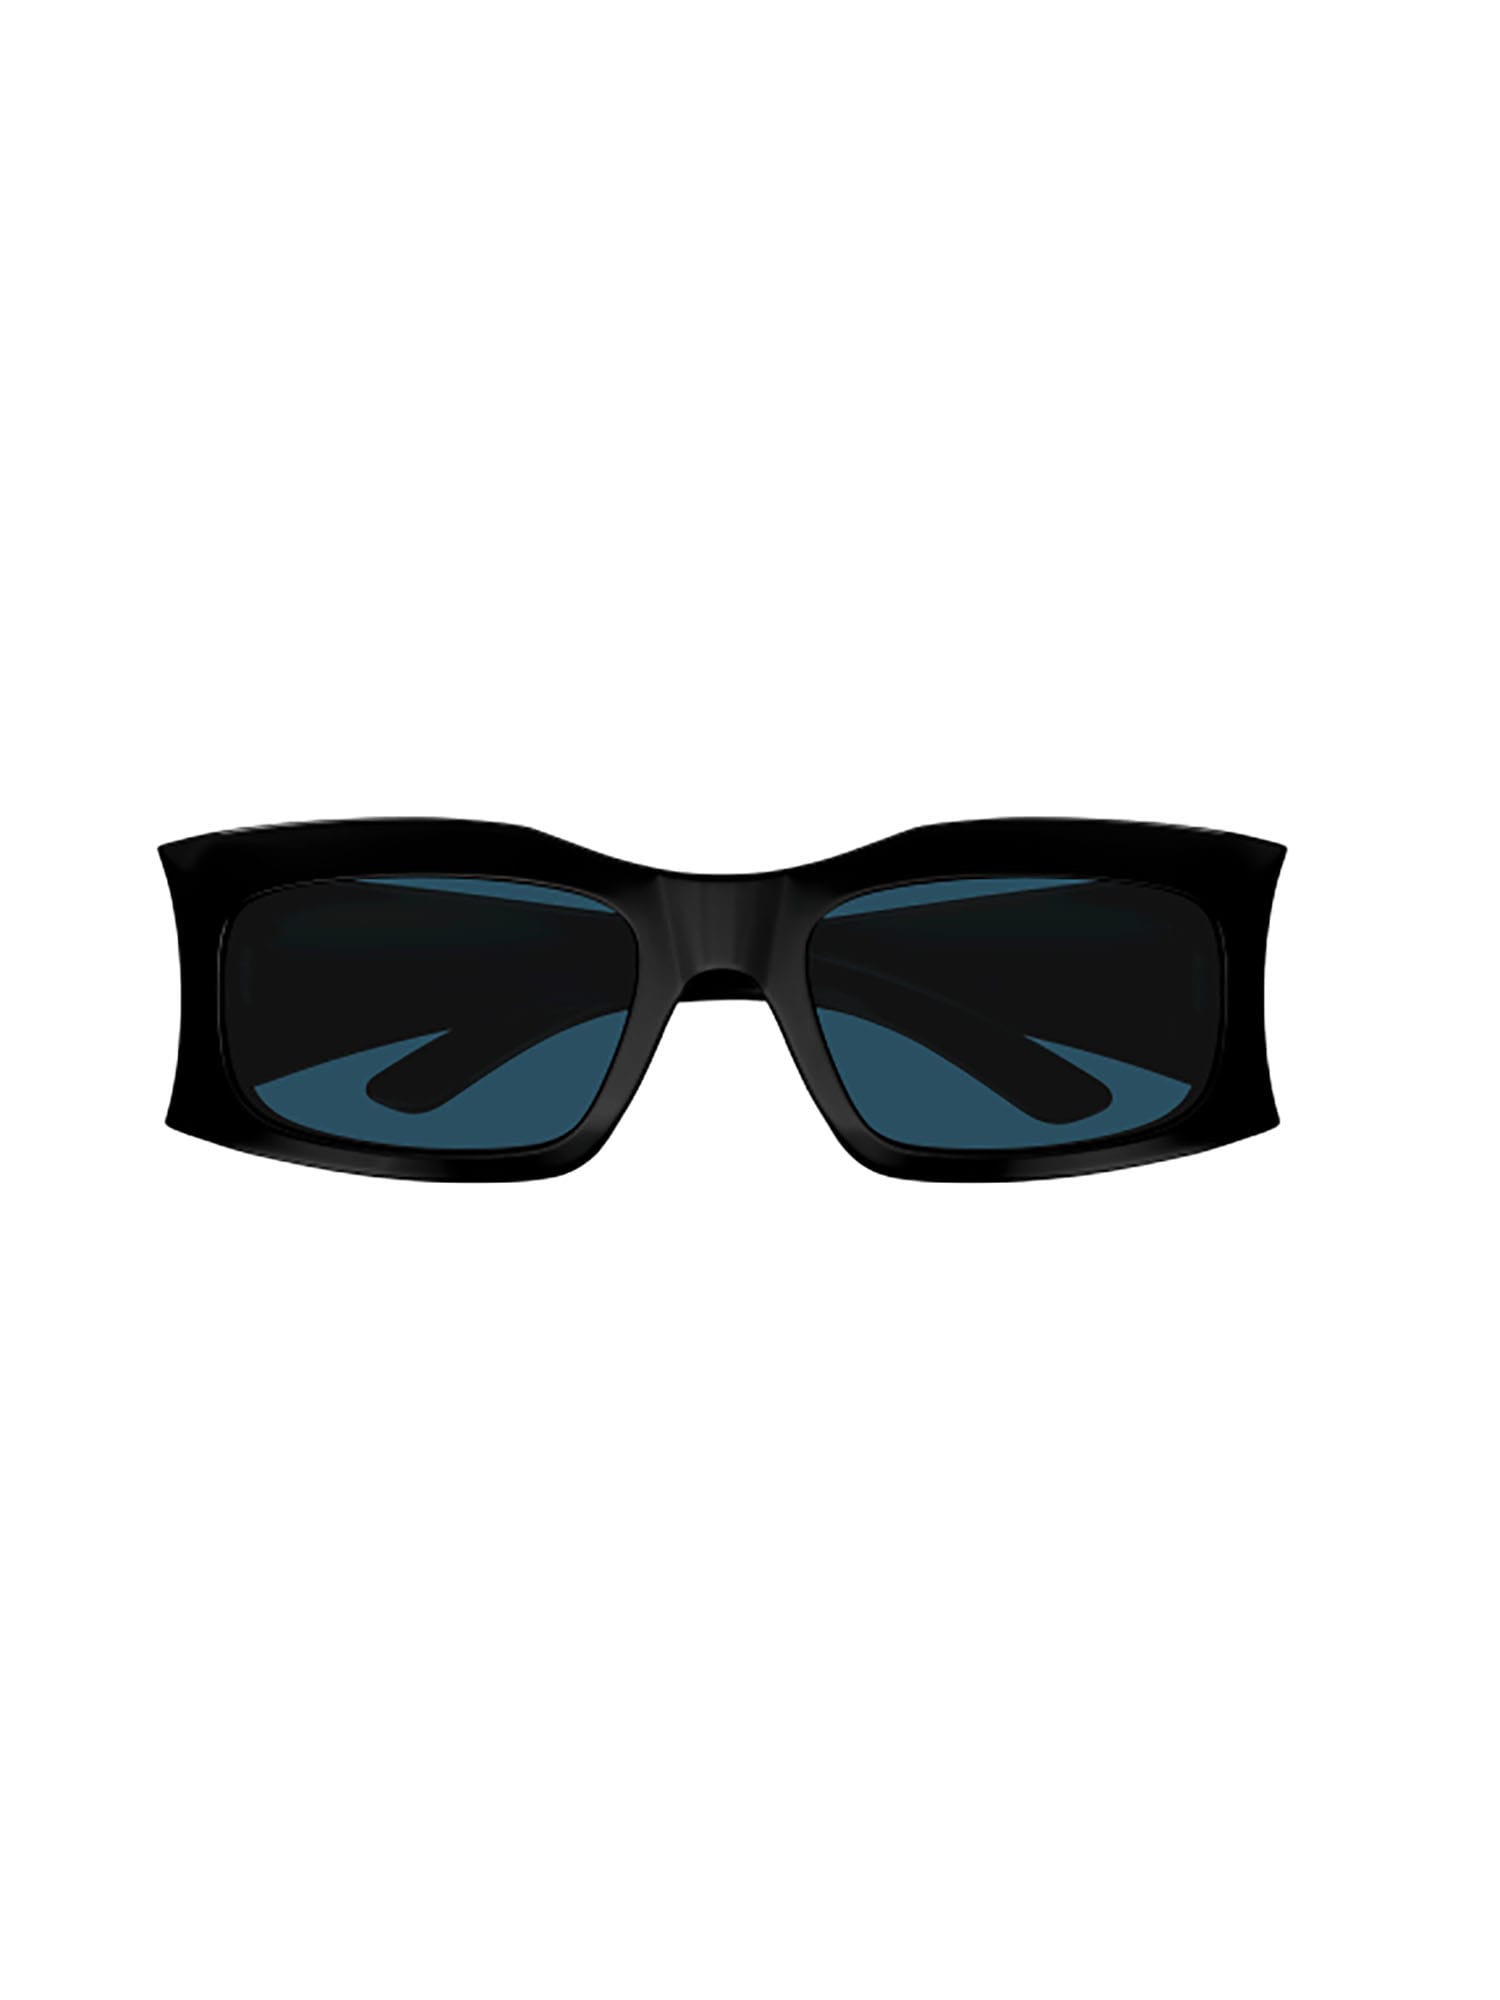 Balenciaga Bb0291s Sunglasses In Black Black Blue